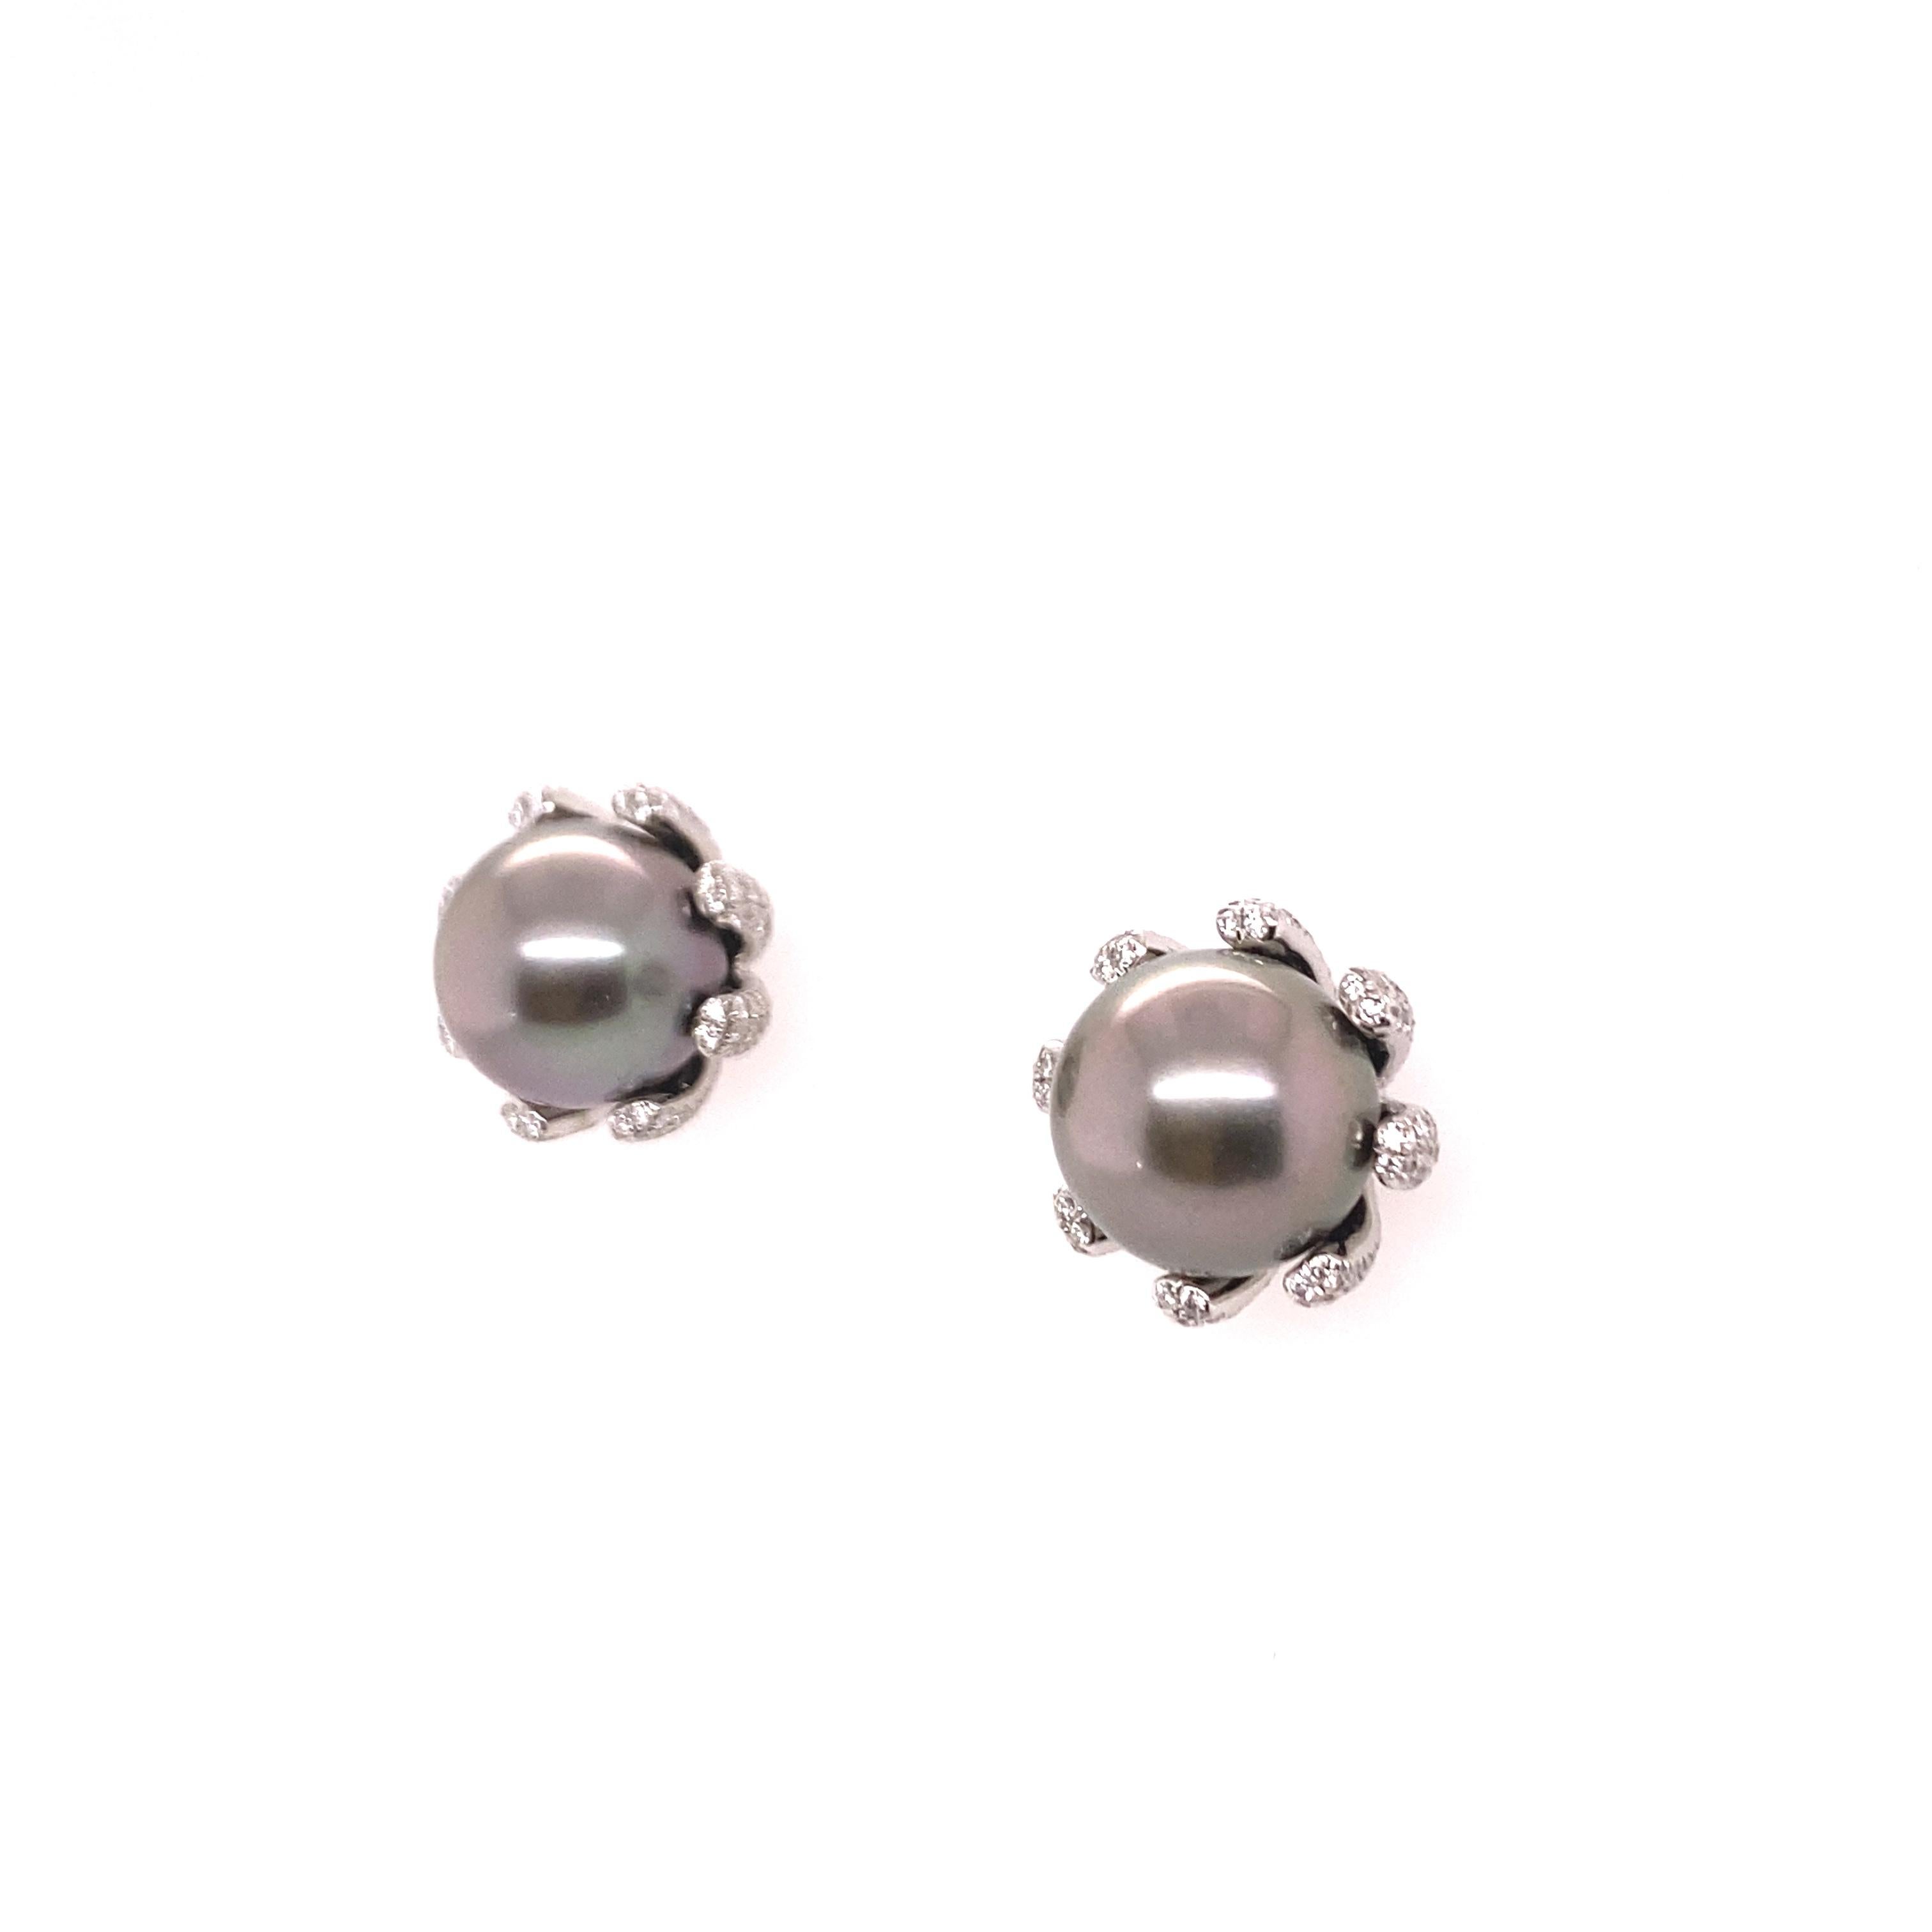 Magnifique paire de clous d'oreille fabriqués en or blanc 18 carats, centrés chacun sur une perle de culture de Tahiti de 10,0 et 10,5 mm de diamètre. Les perles sont de formes parfaitement rondes, d'une couleur gris foncé moyen, avec de légers